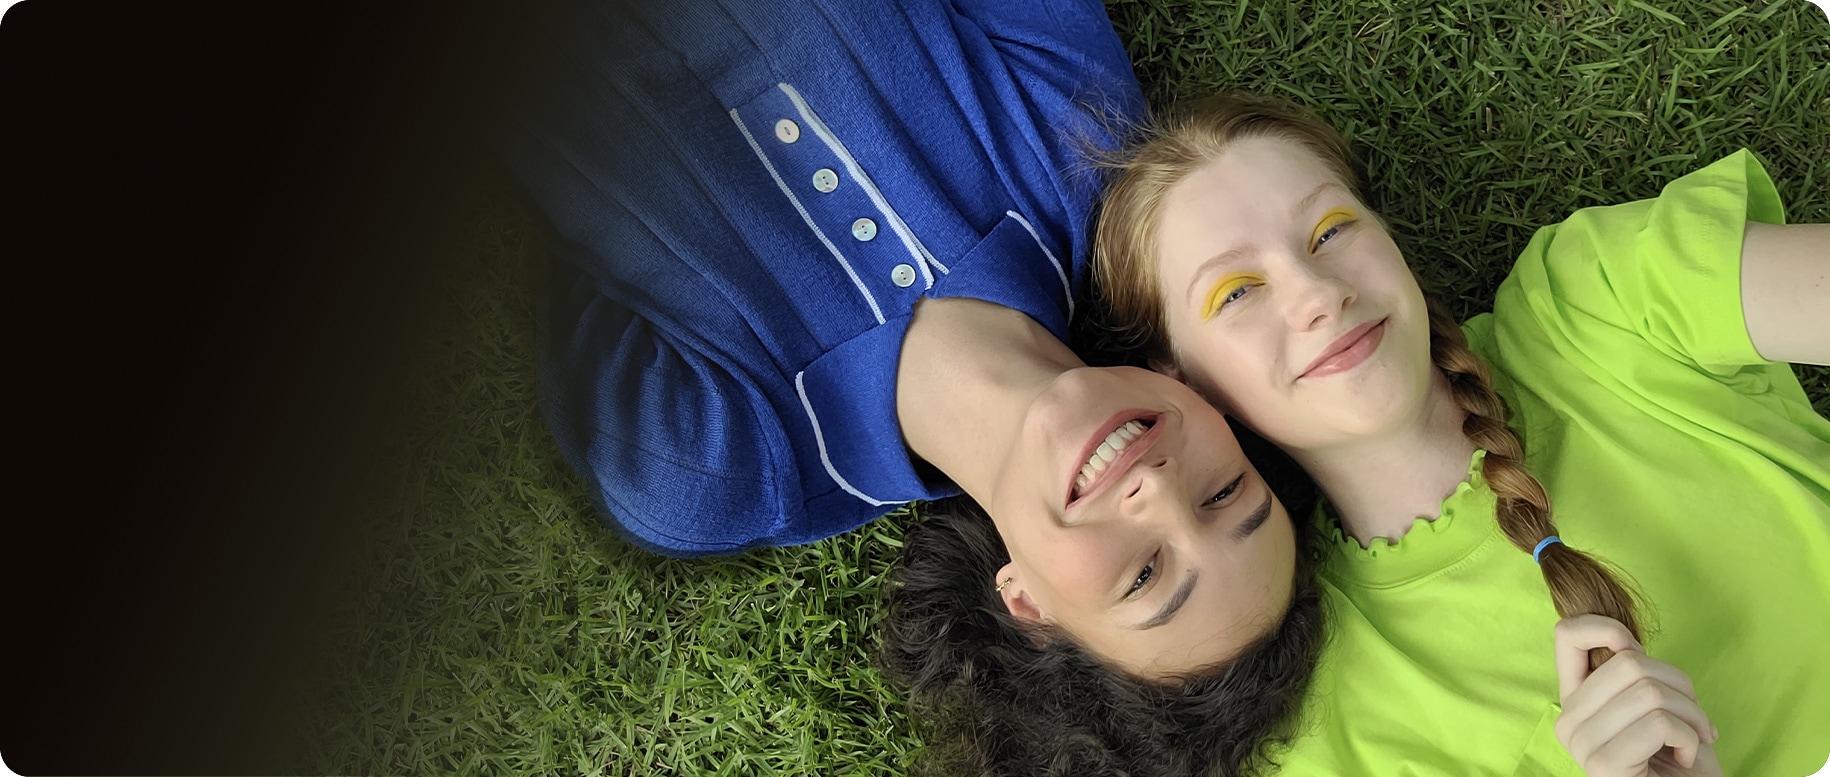 Une vue aérienne de deux femmes allongées côte à côte sur l'herbe. La femme de gauche porte une chemise à col bleu tandis que la femme de droite porte un haut vert citron. Leurs têtes sont pressées l'une contre l'autre des extrémités opposées. Ils sourient tous les deux à la caméra.